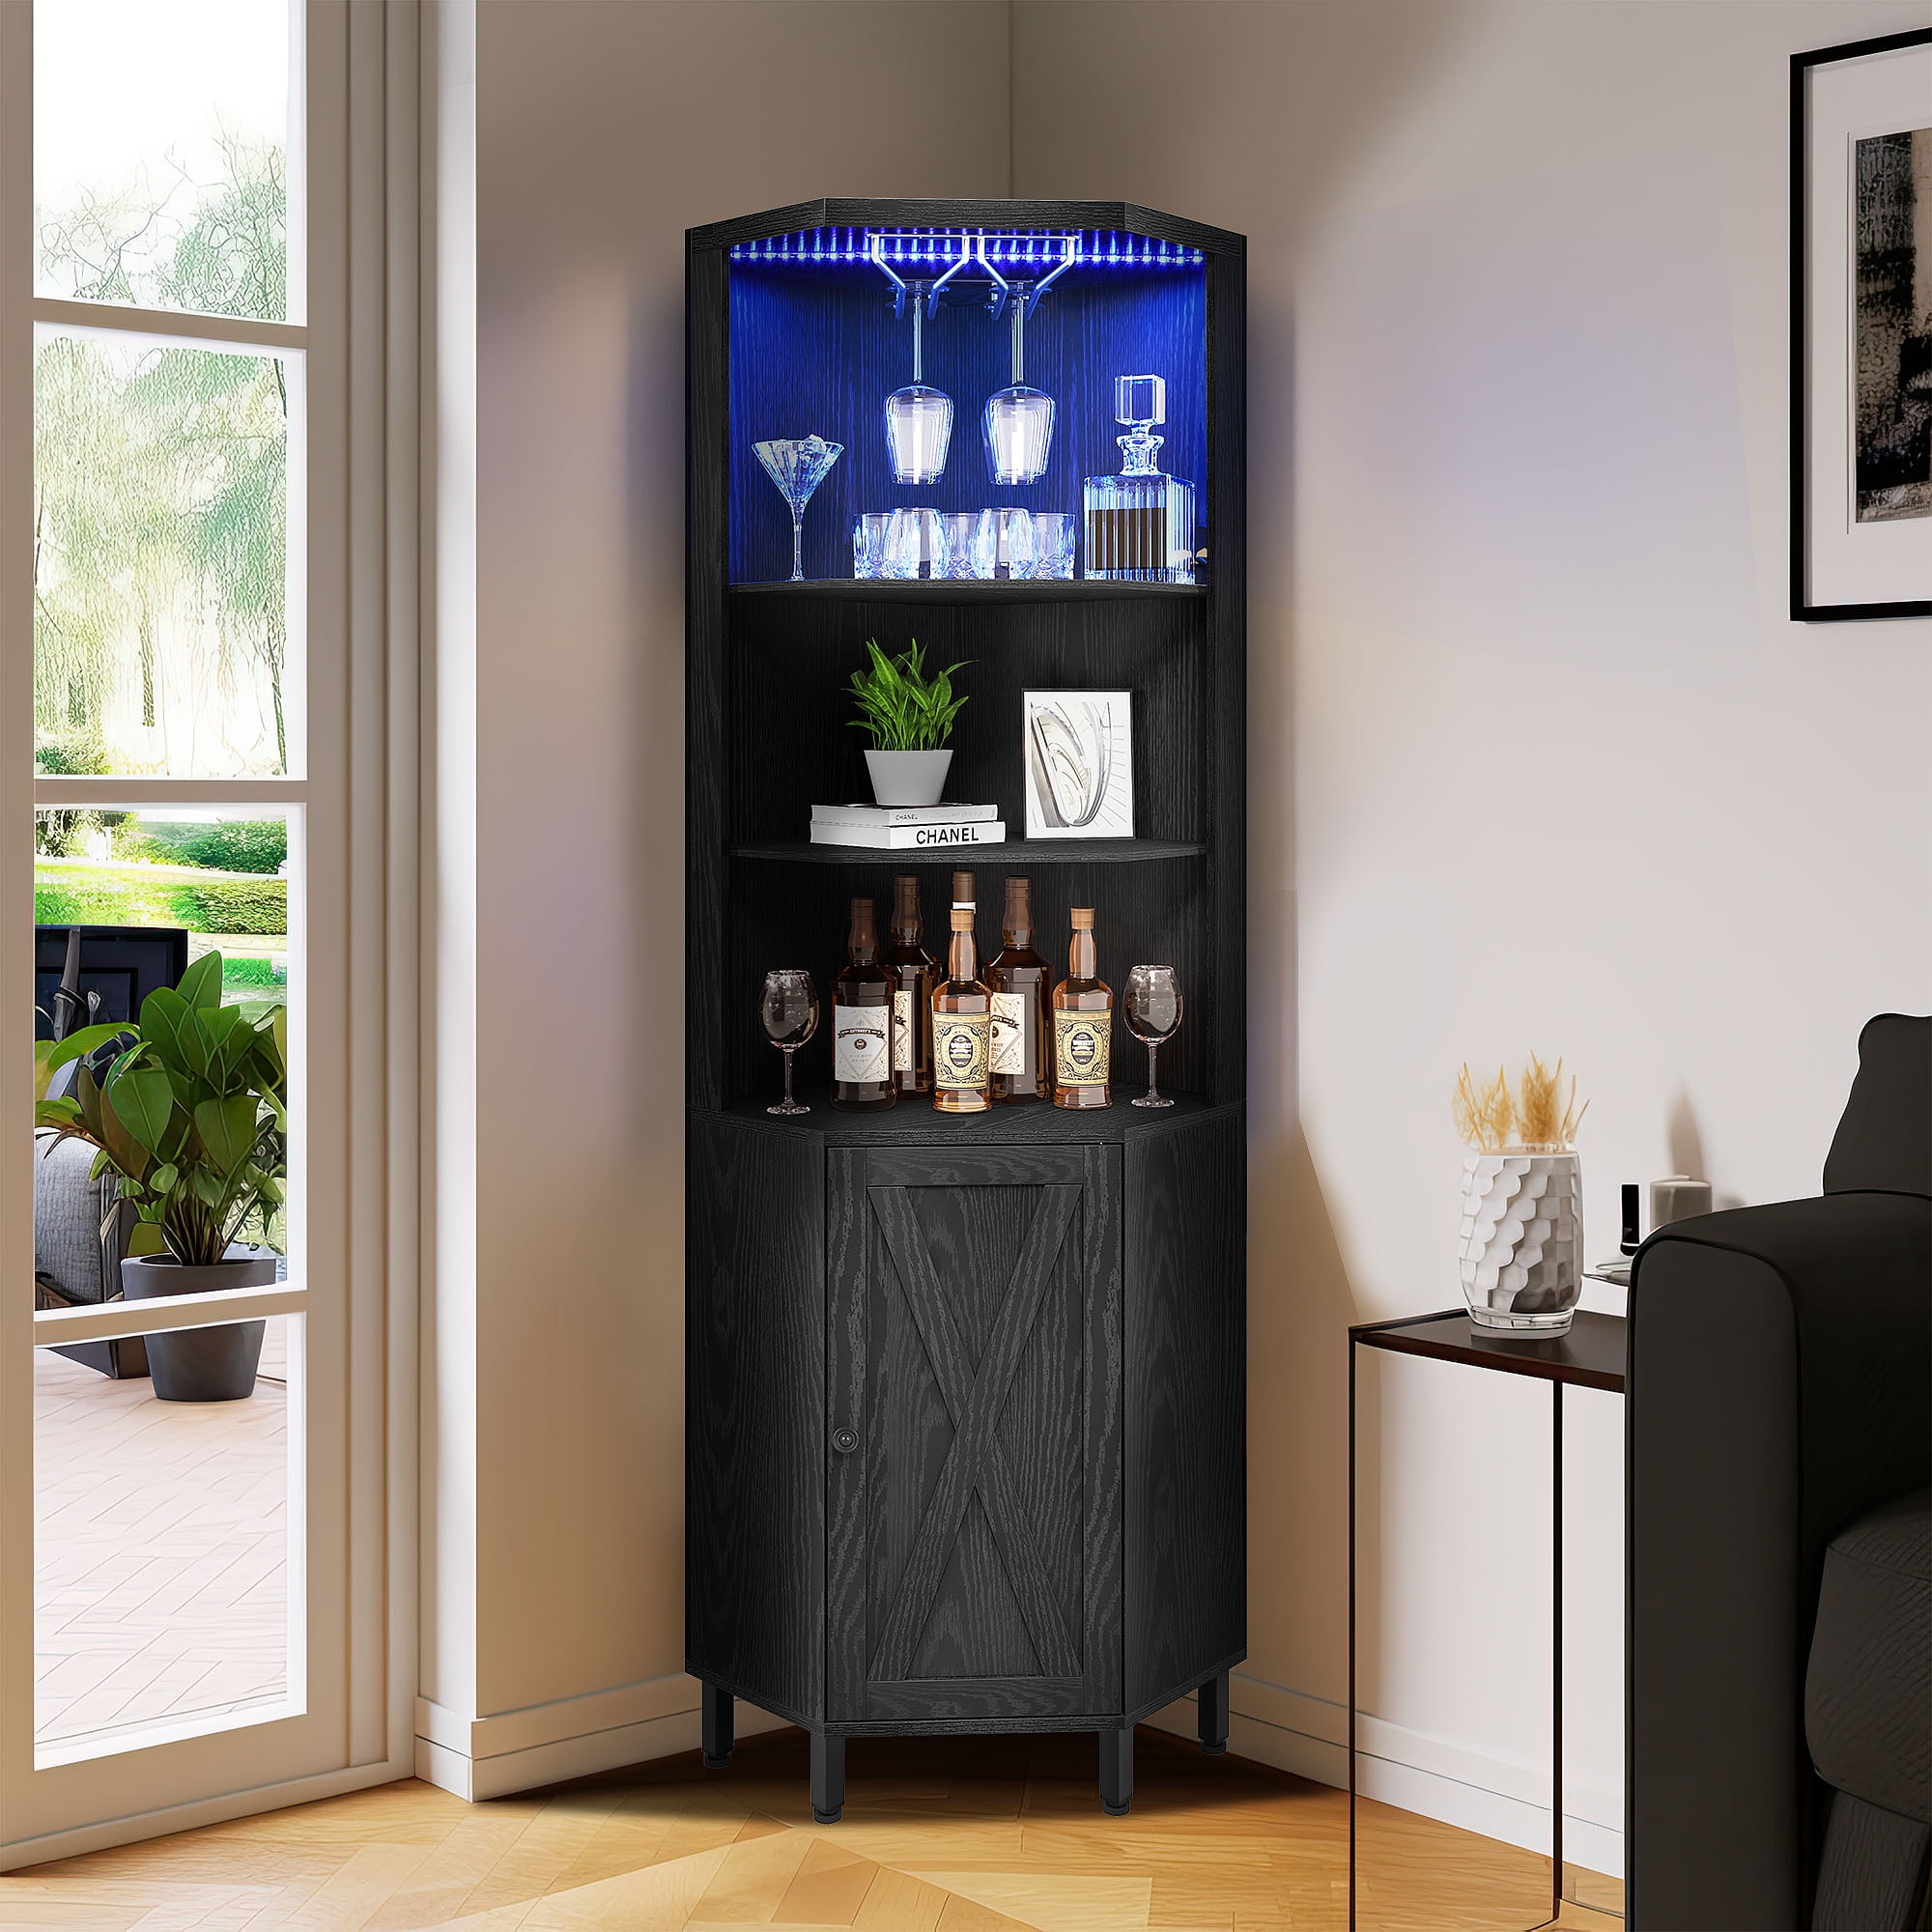 Dextrus 5 Tier Corner Bar Cabinet With Led Lights Glass Holder Storage Door And Shelves Shelf Wine Rack Display Black Com